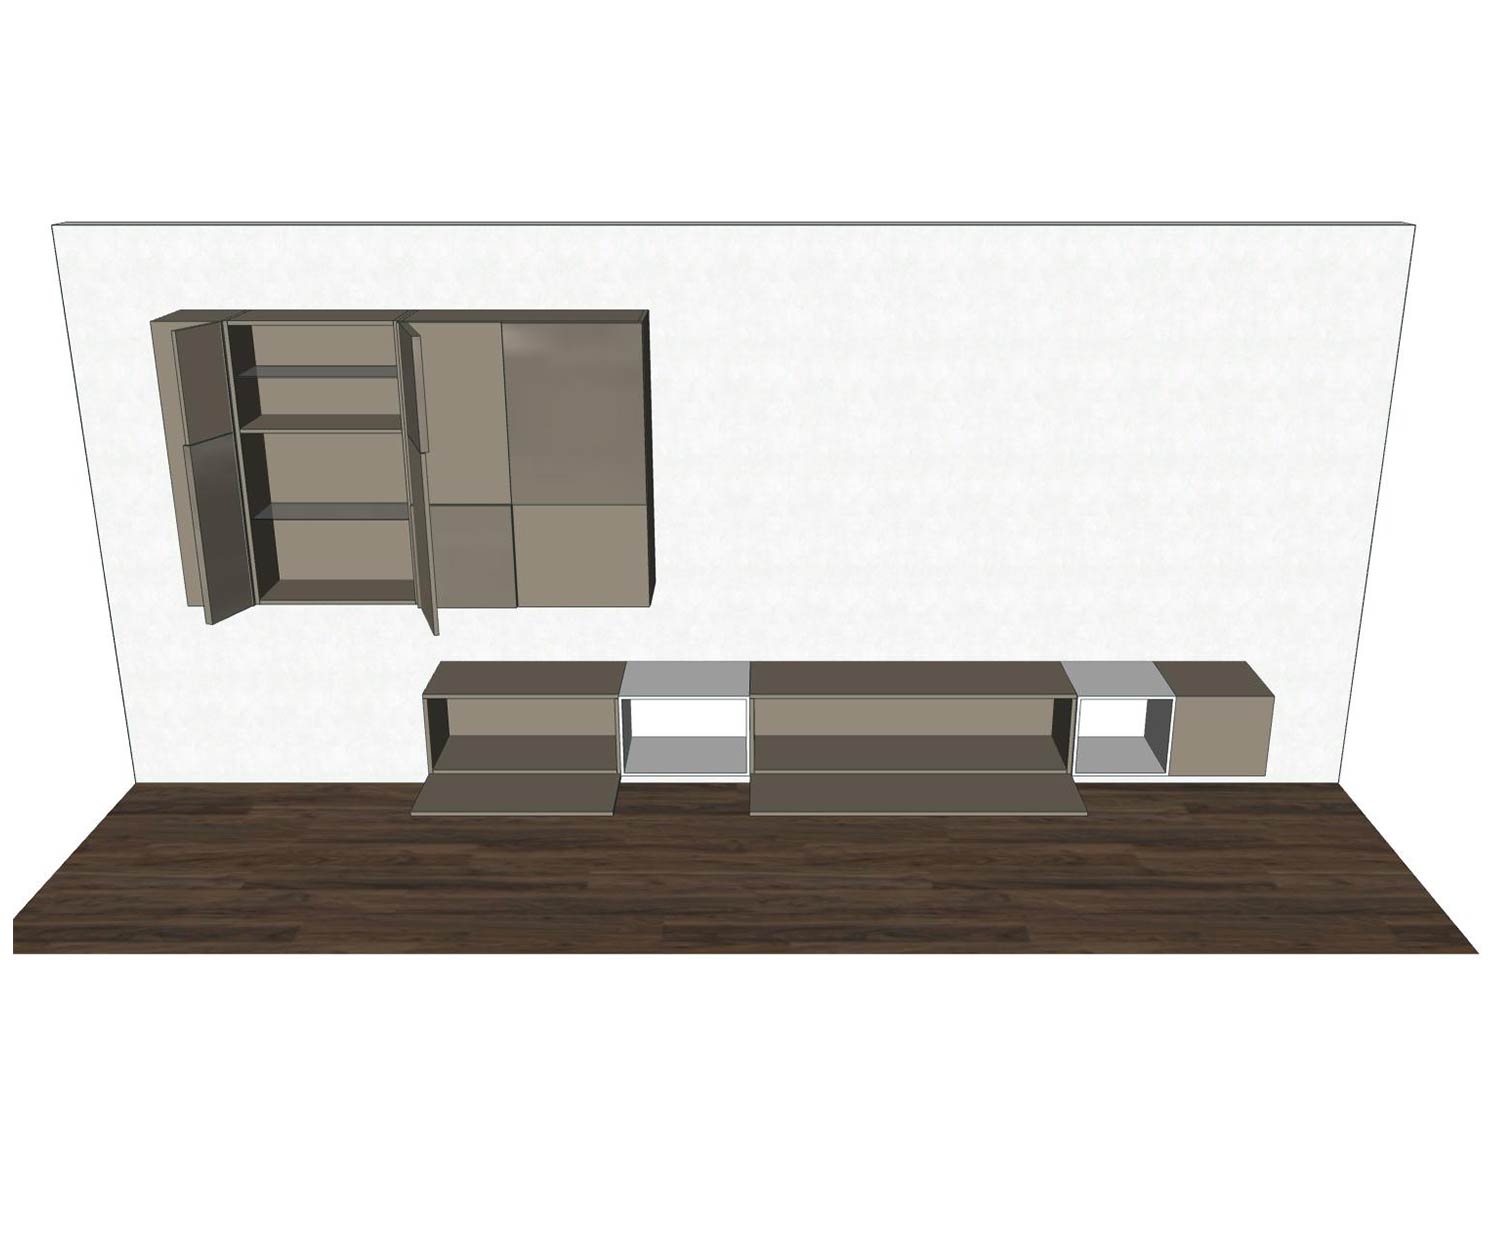 Hängende Design Wohnwand C07 Skizze mit offenen Türen und offenen Elementen